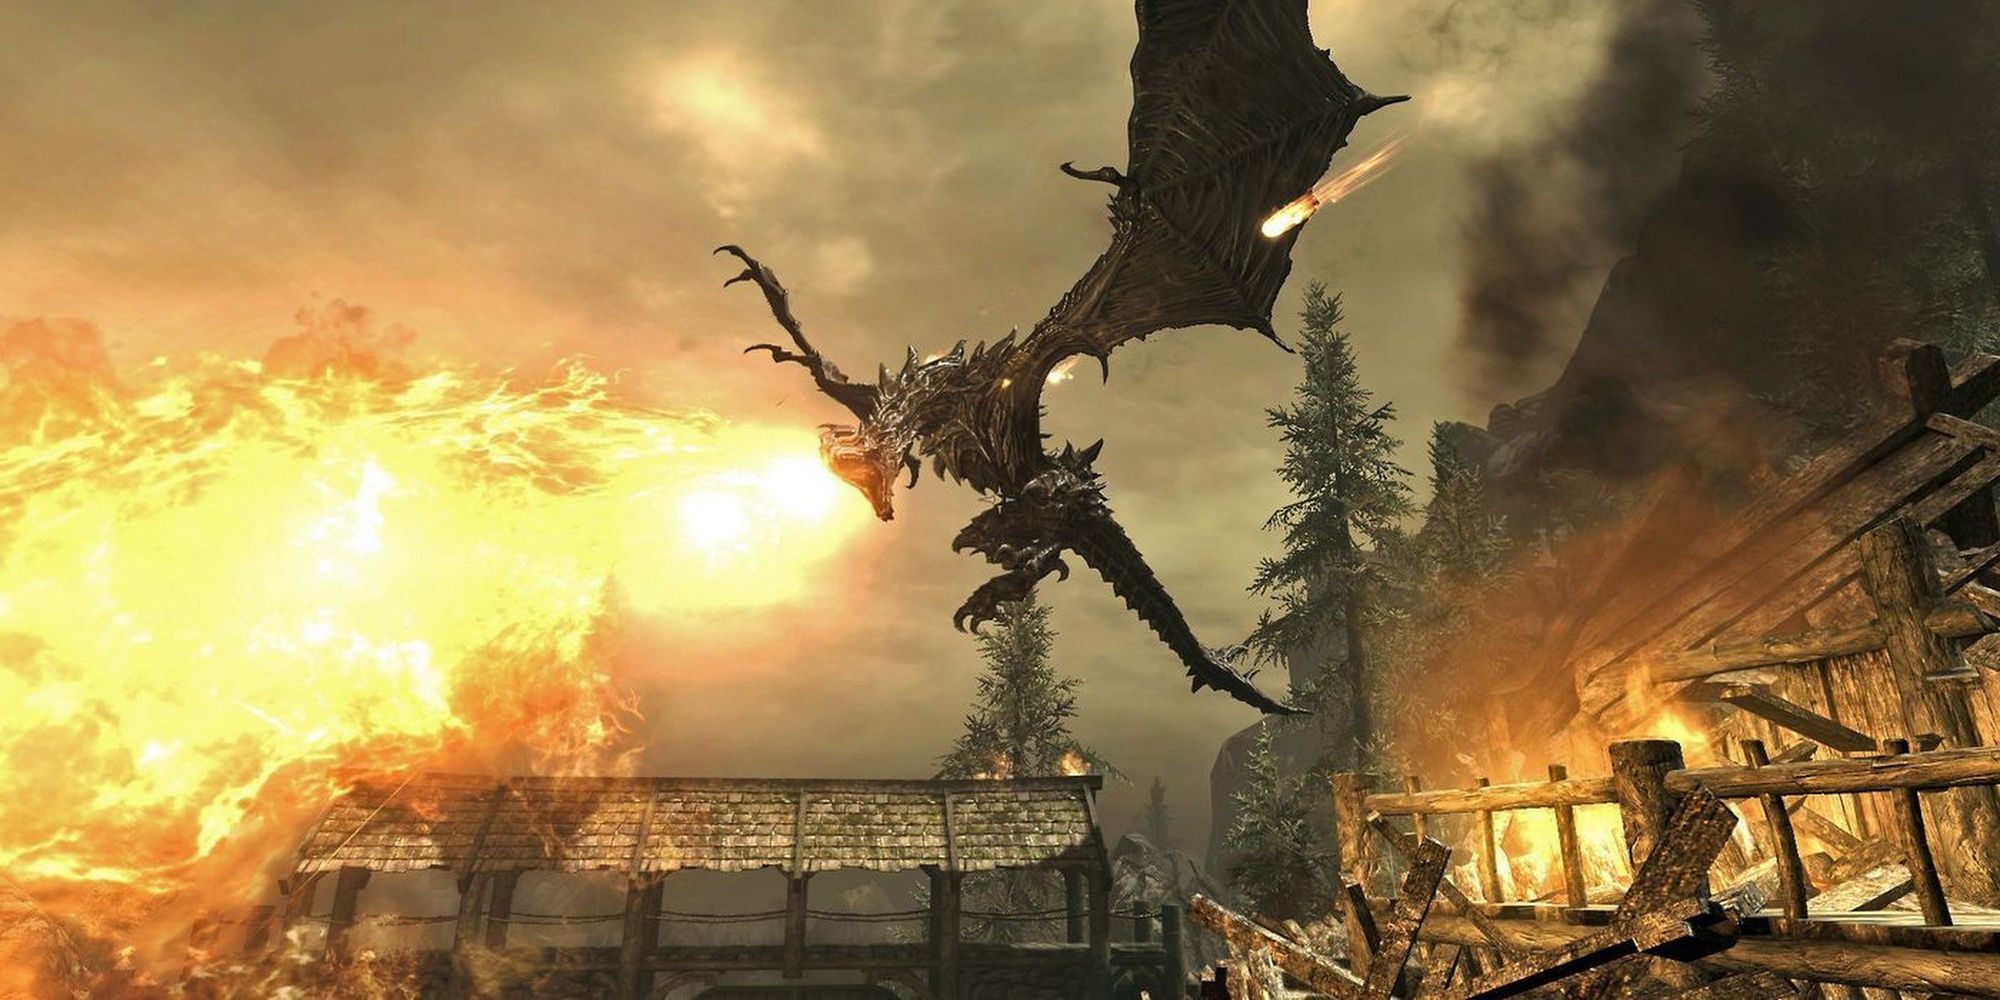 Skyrim Dragon Fire Breath Attack